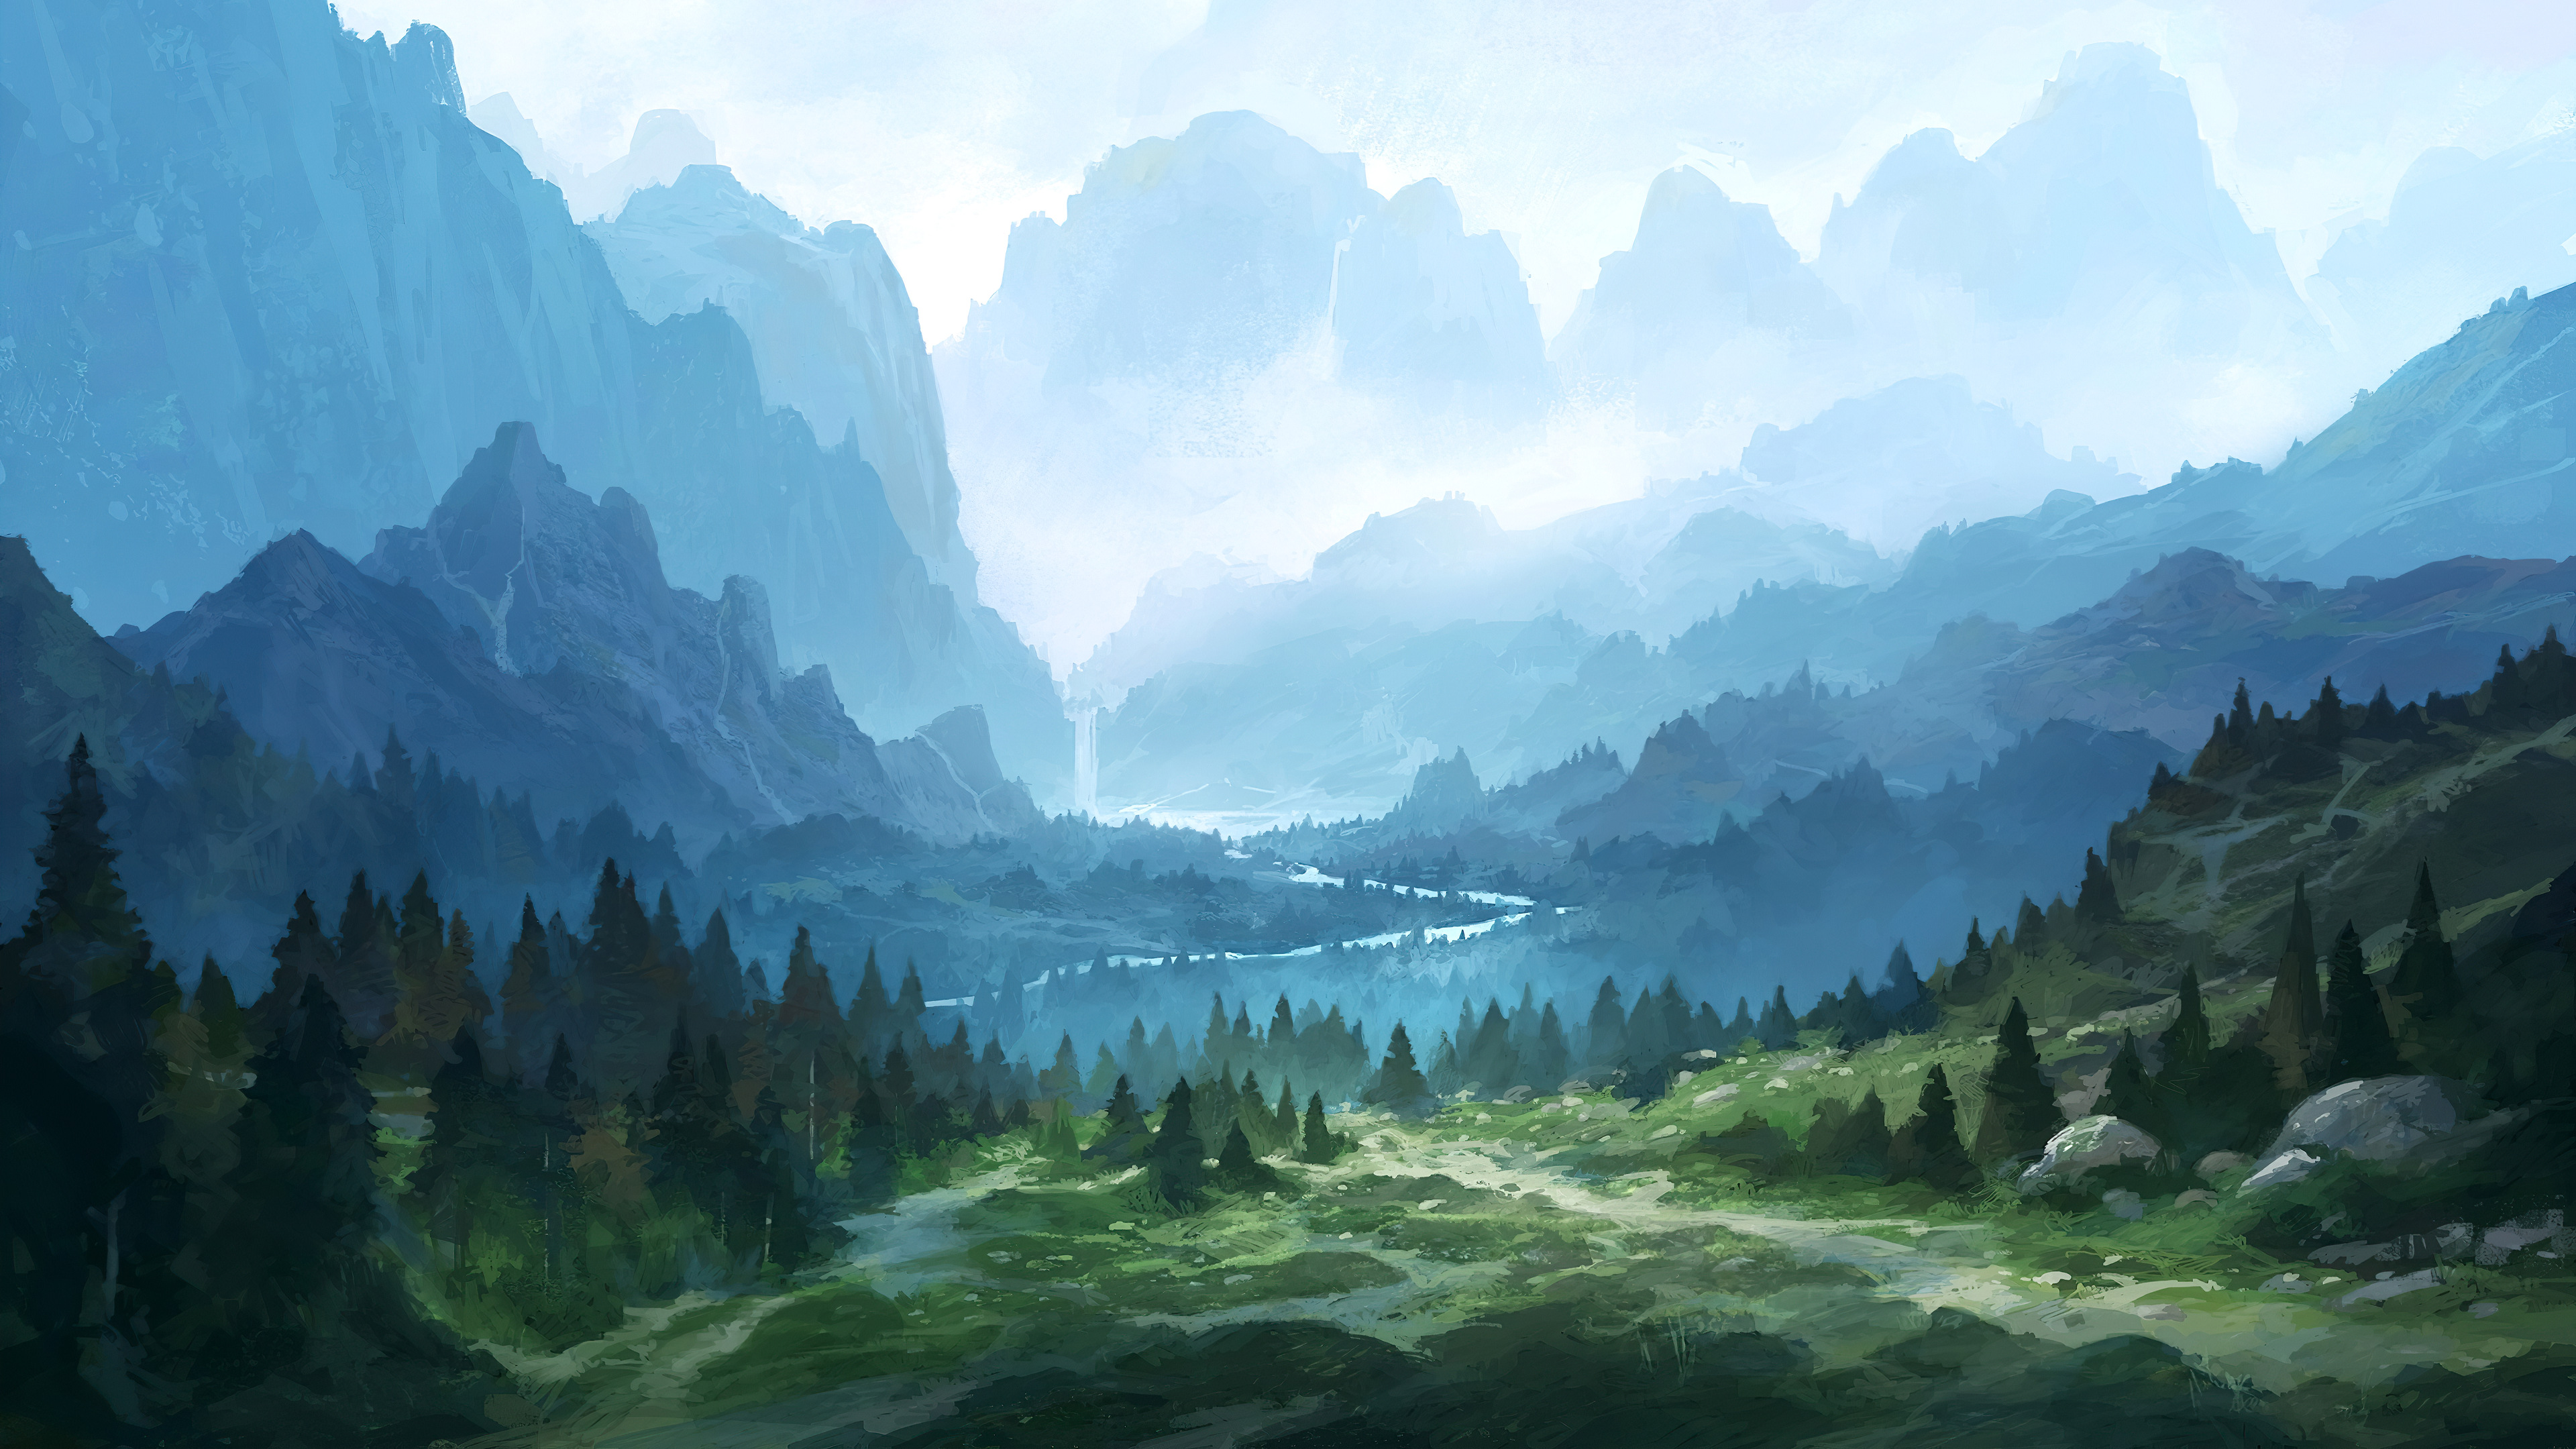 Green Mountain Landscape 4k Ultra HD Wallpaper